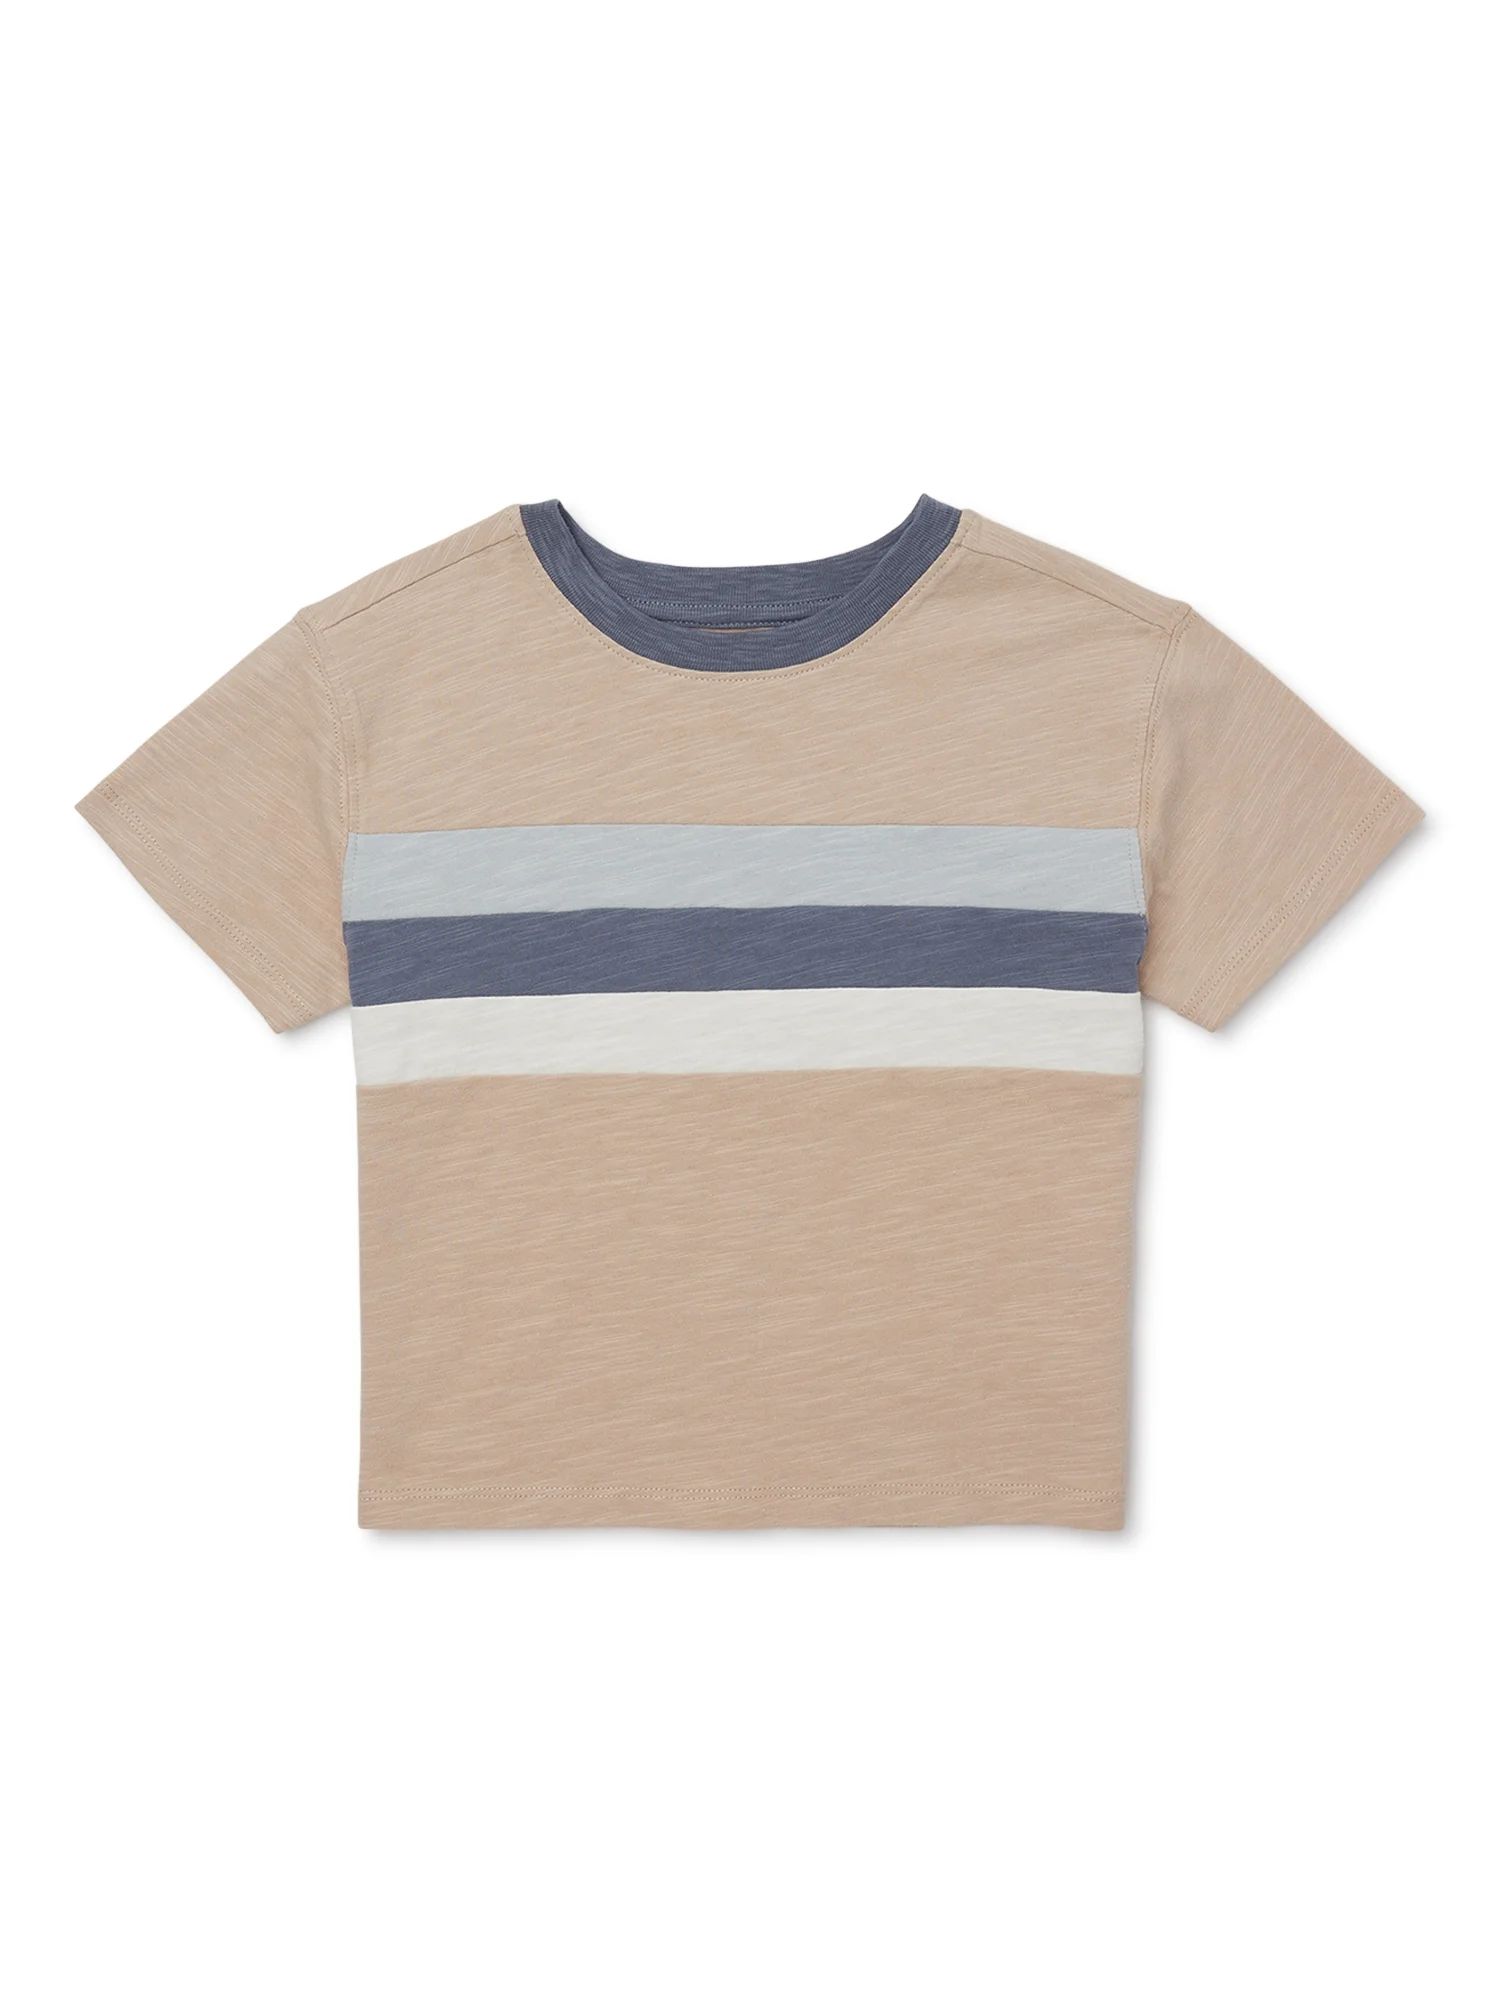 easy-peasy Toddler Short Sleeve Striped Ringer T-Shirt, Sizes 18M-5T | Walmart (US)